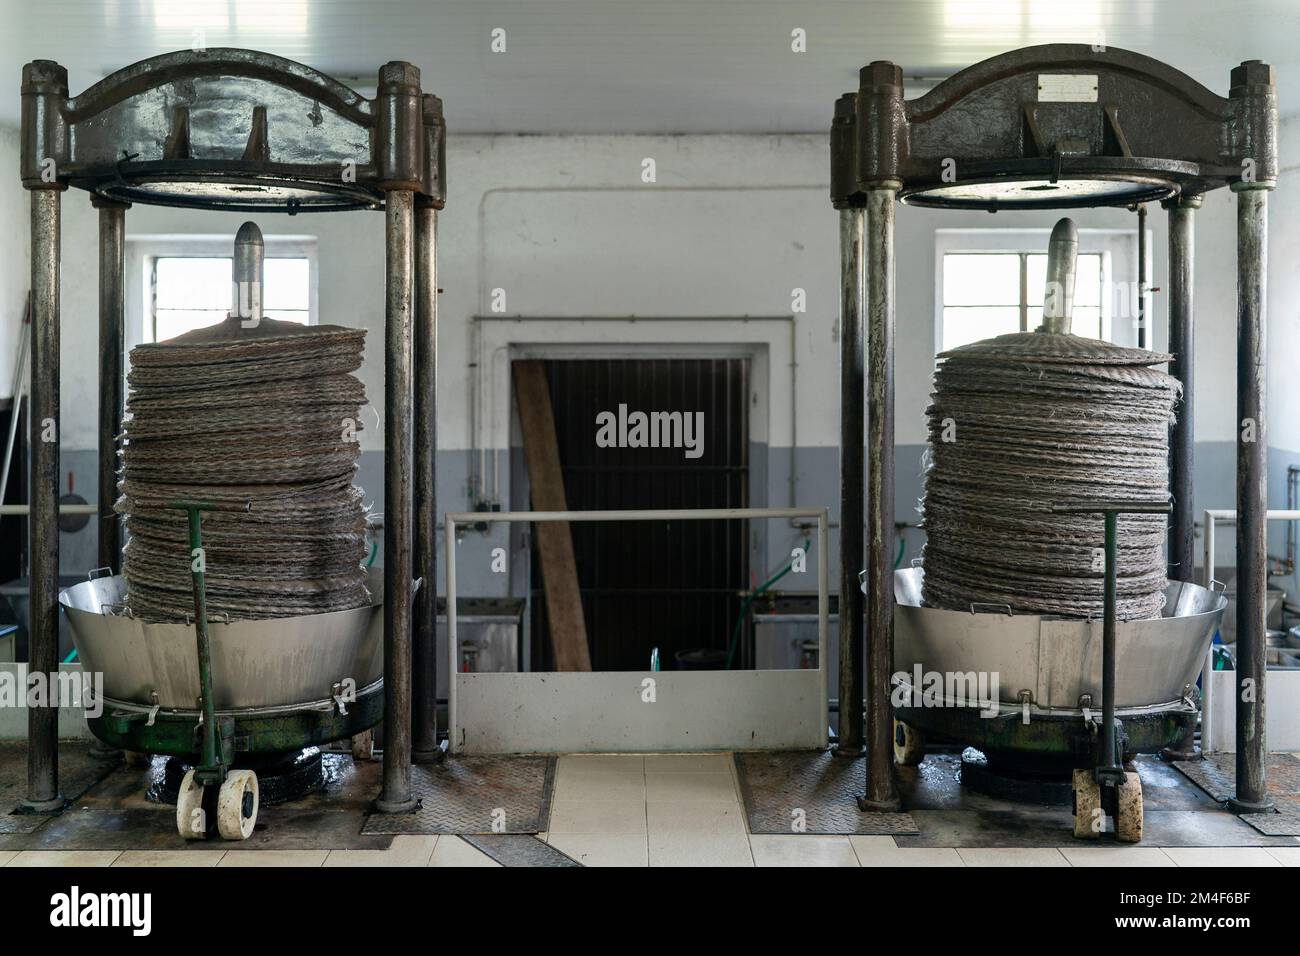 Prensa de aceite de oliva fotografías e imágenes de alta resolución - Alamy